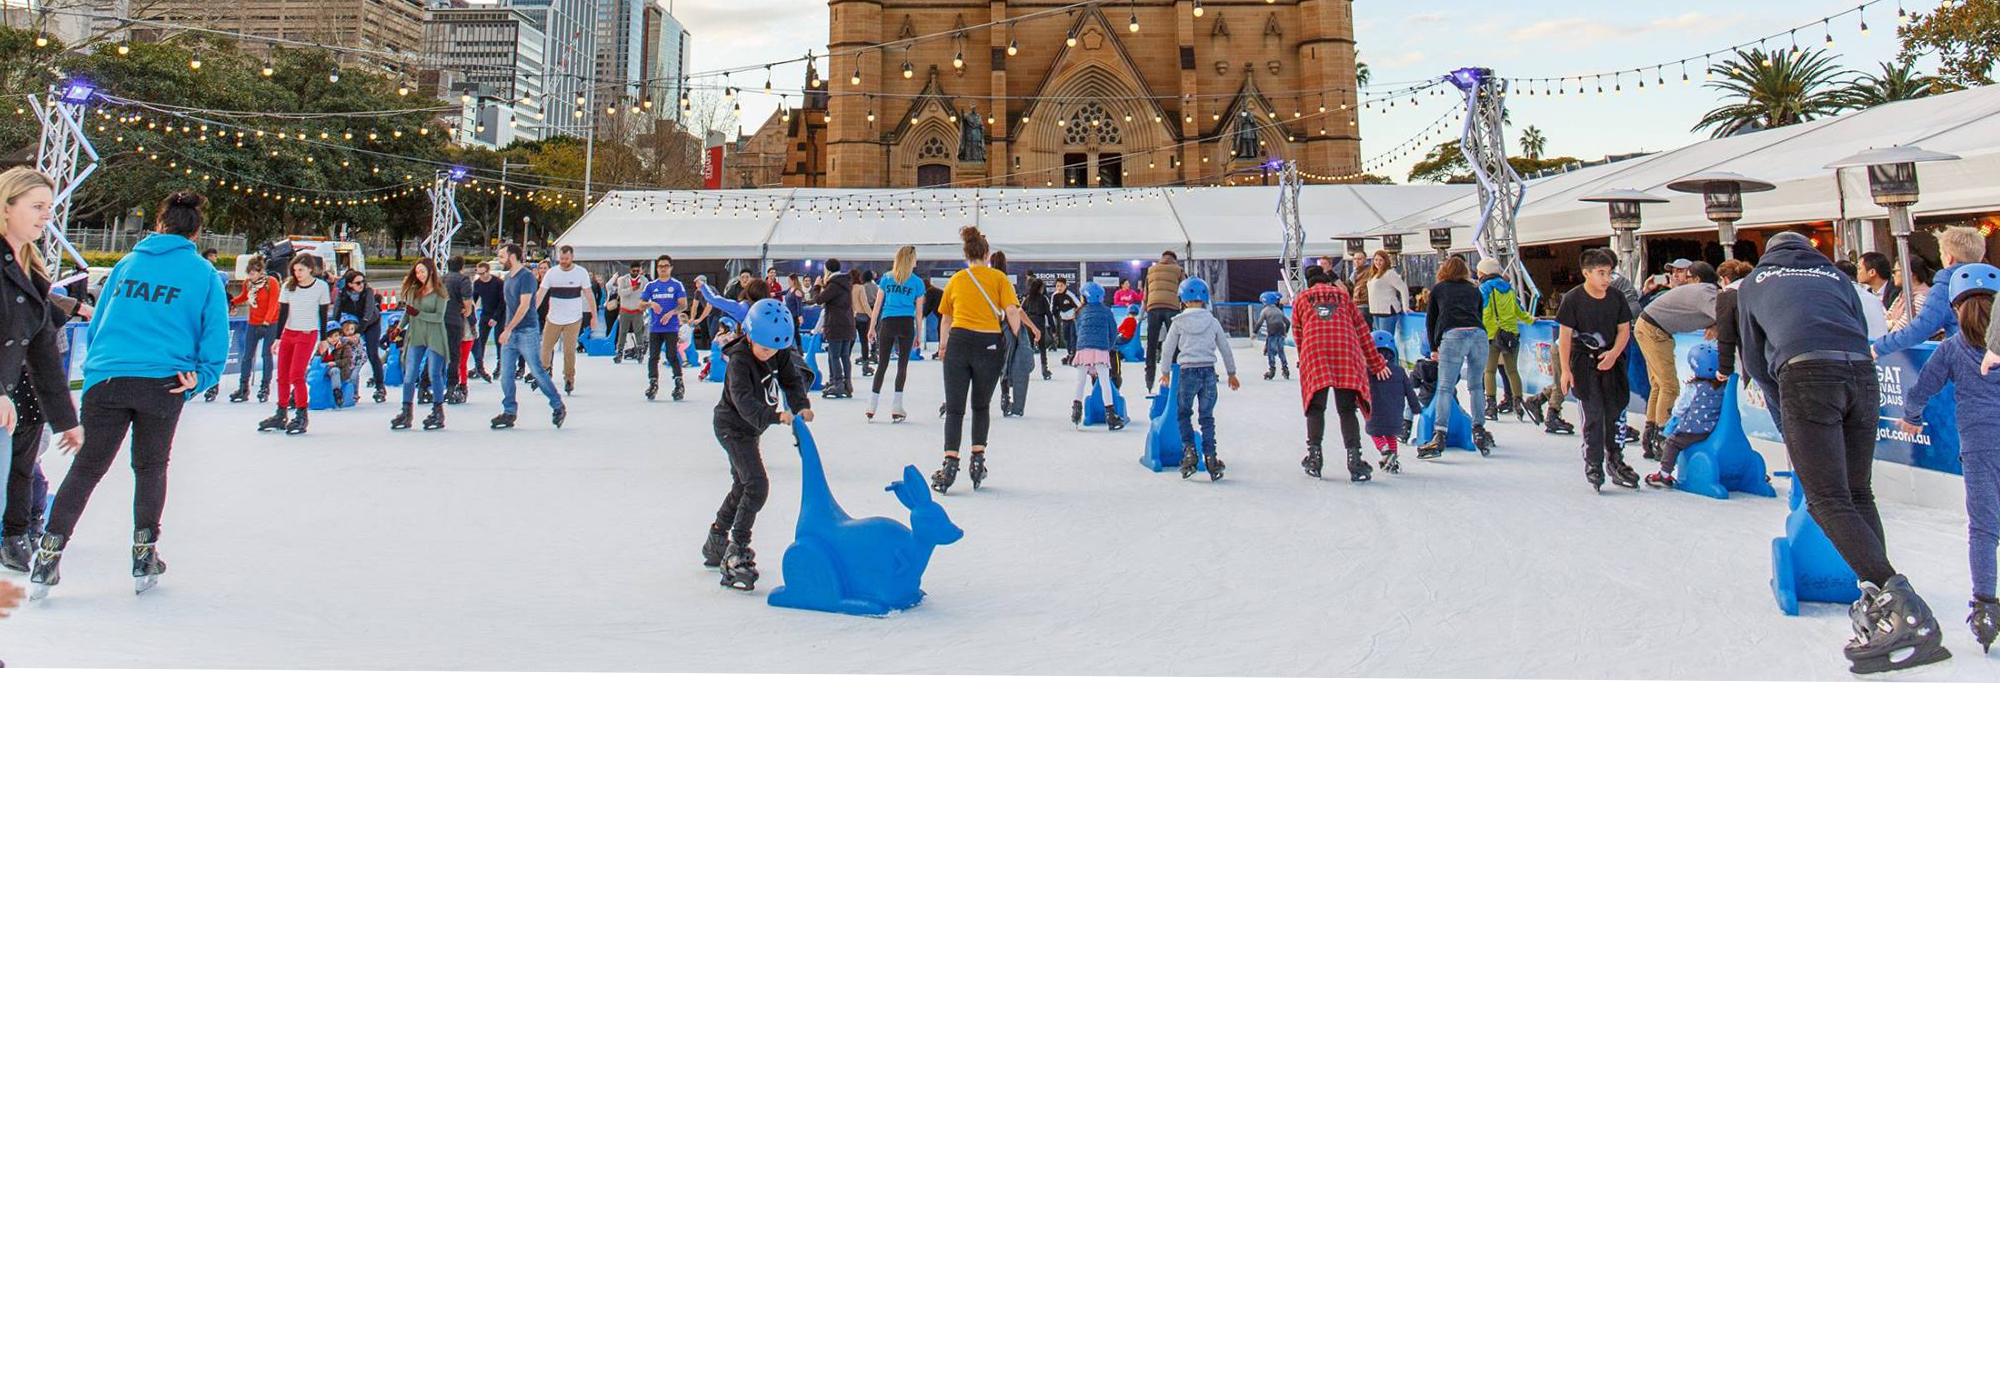 Skating at Cathedral Square